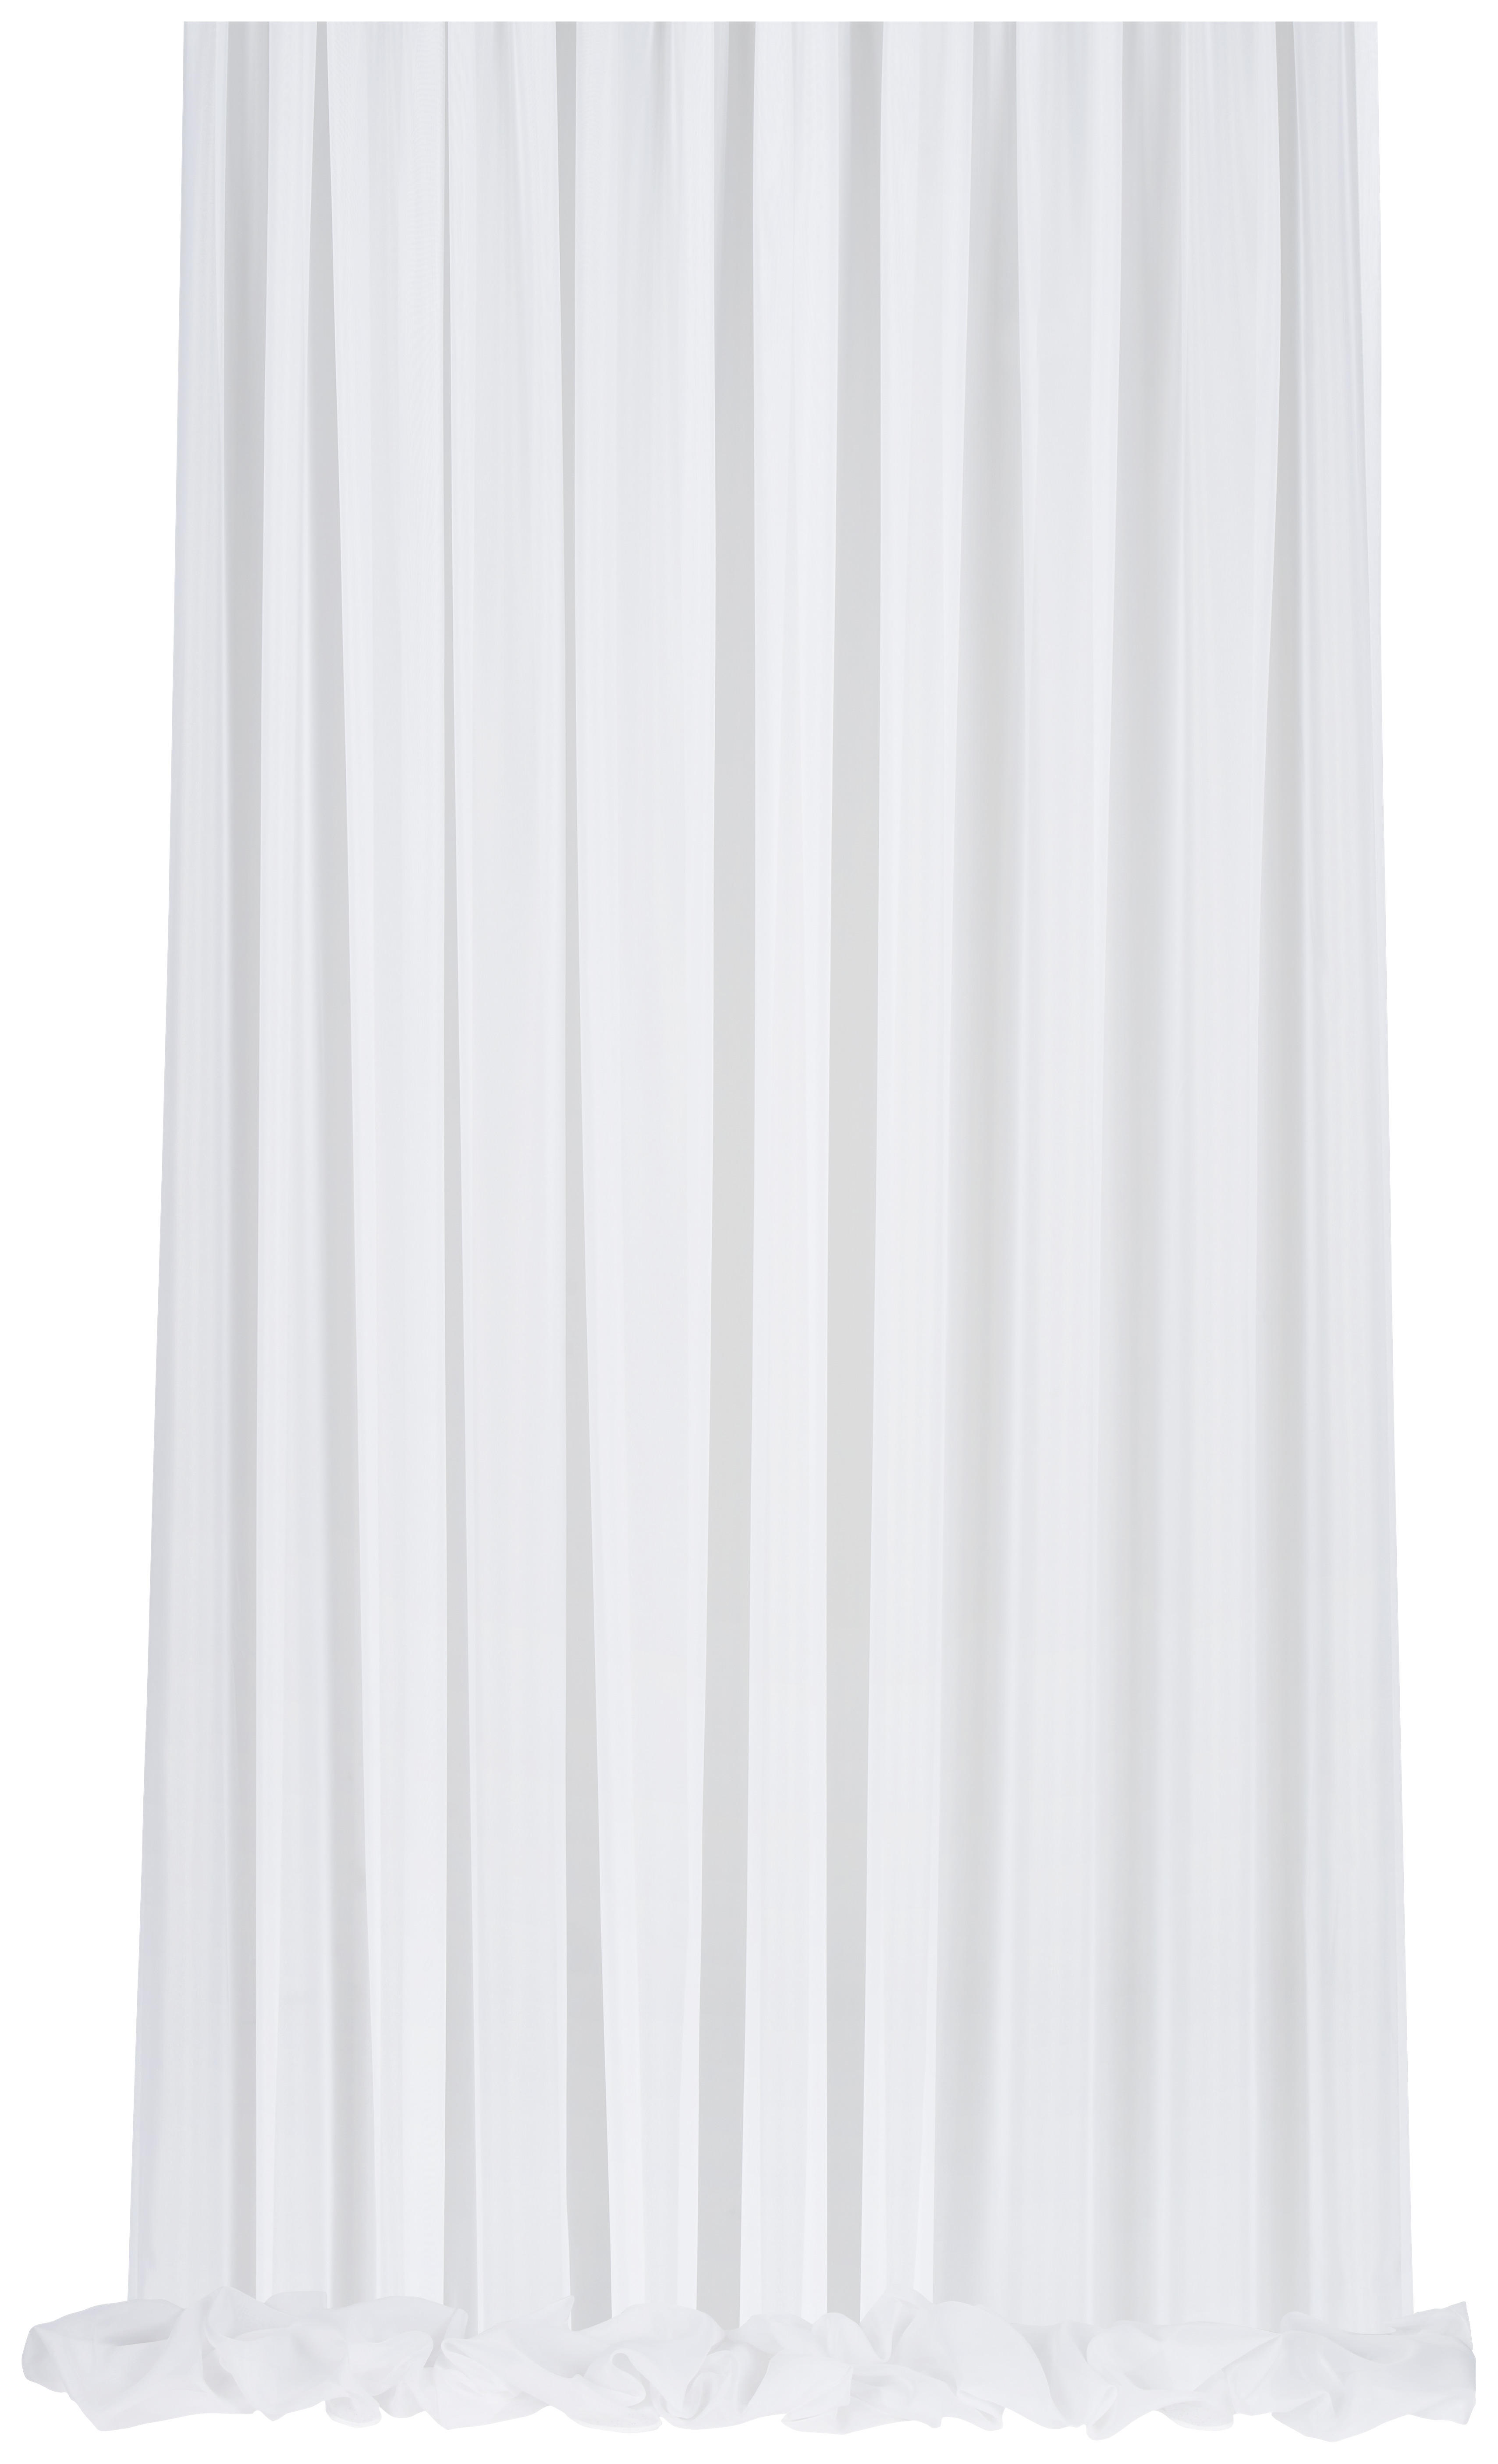 ZÁCLONA, priehľadné, 260 cm - biela, Konventionell, textil (260cm) - Esposa